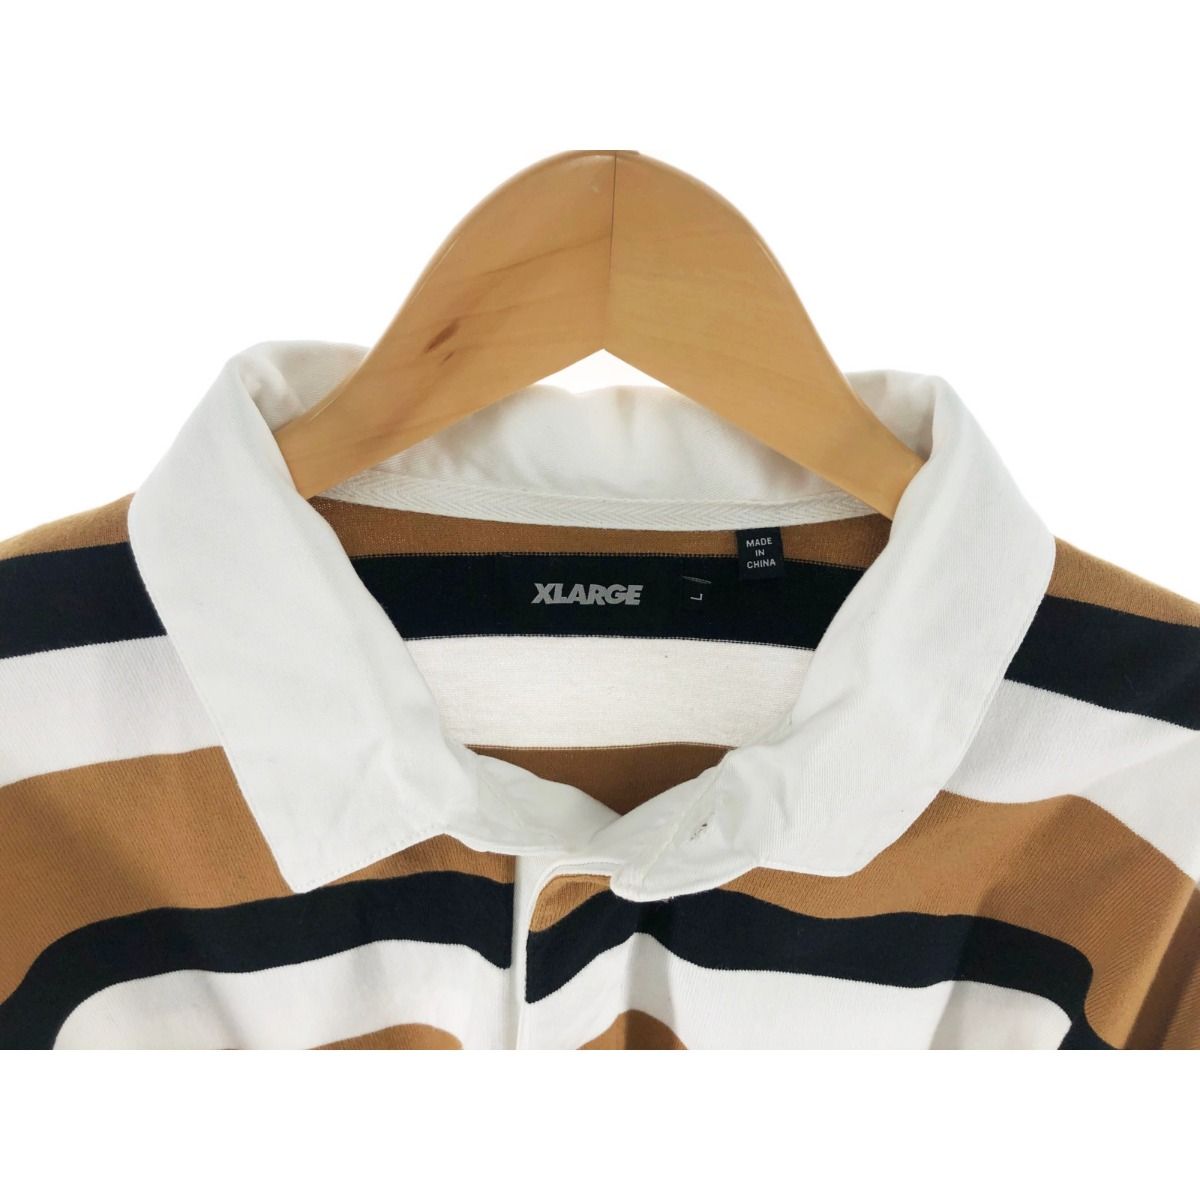 〇〇X-LARGE エクストララージ メンズ シャツ ラガーシャツ サイズL ブラウン×ブラック×ホワイト